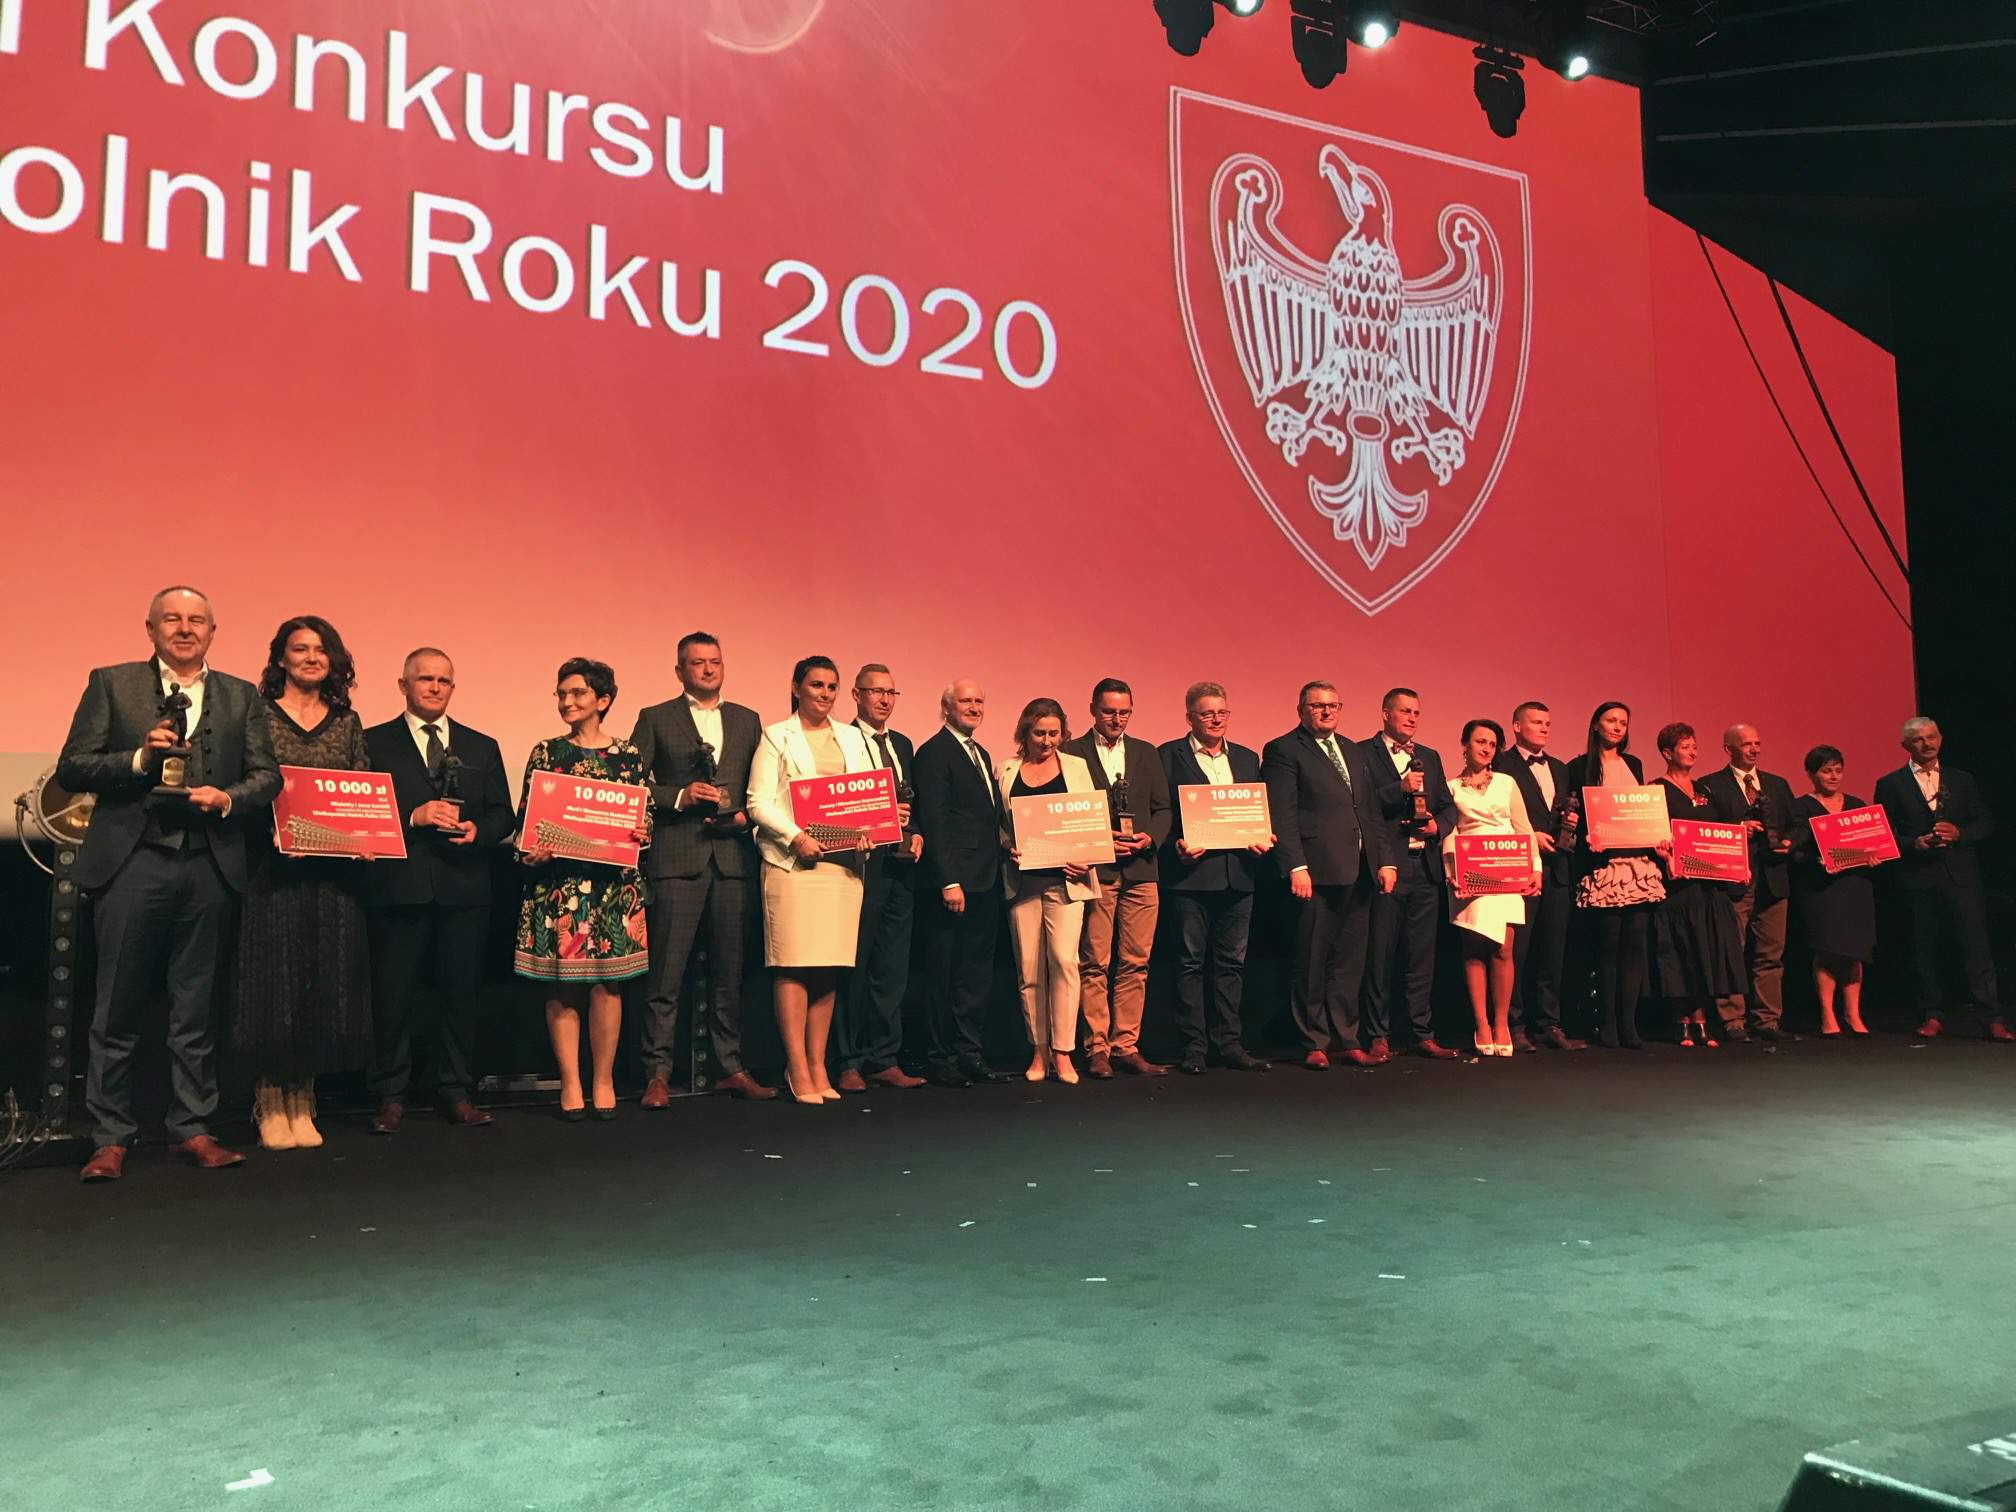 Laureaci  XX edycji Konkursu Wielkopolski Rolnik Roku 2020.